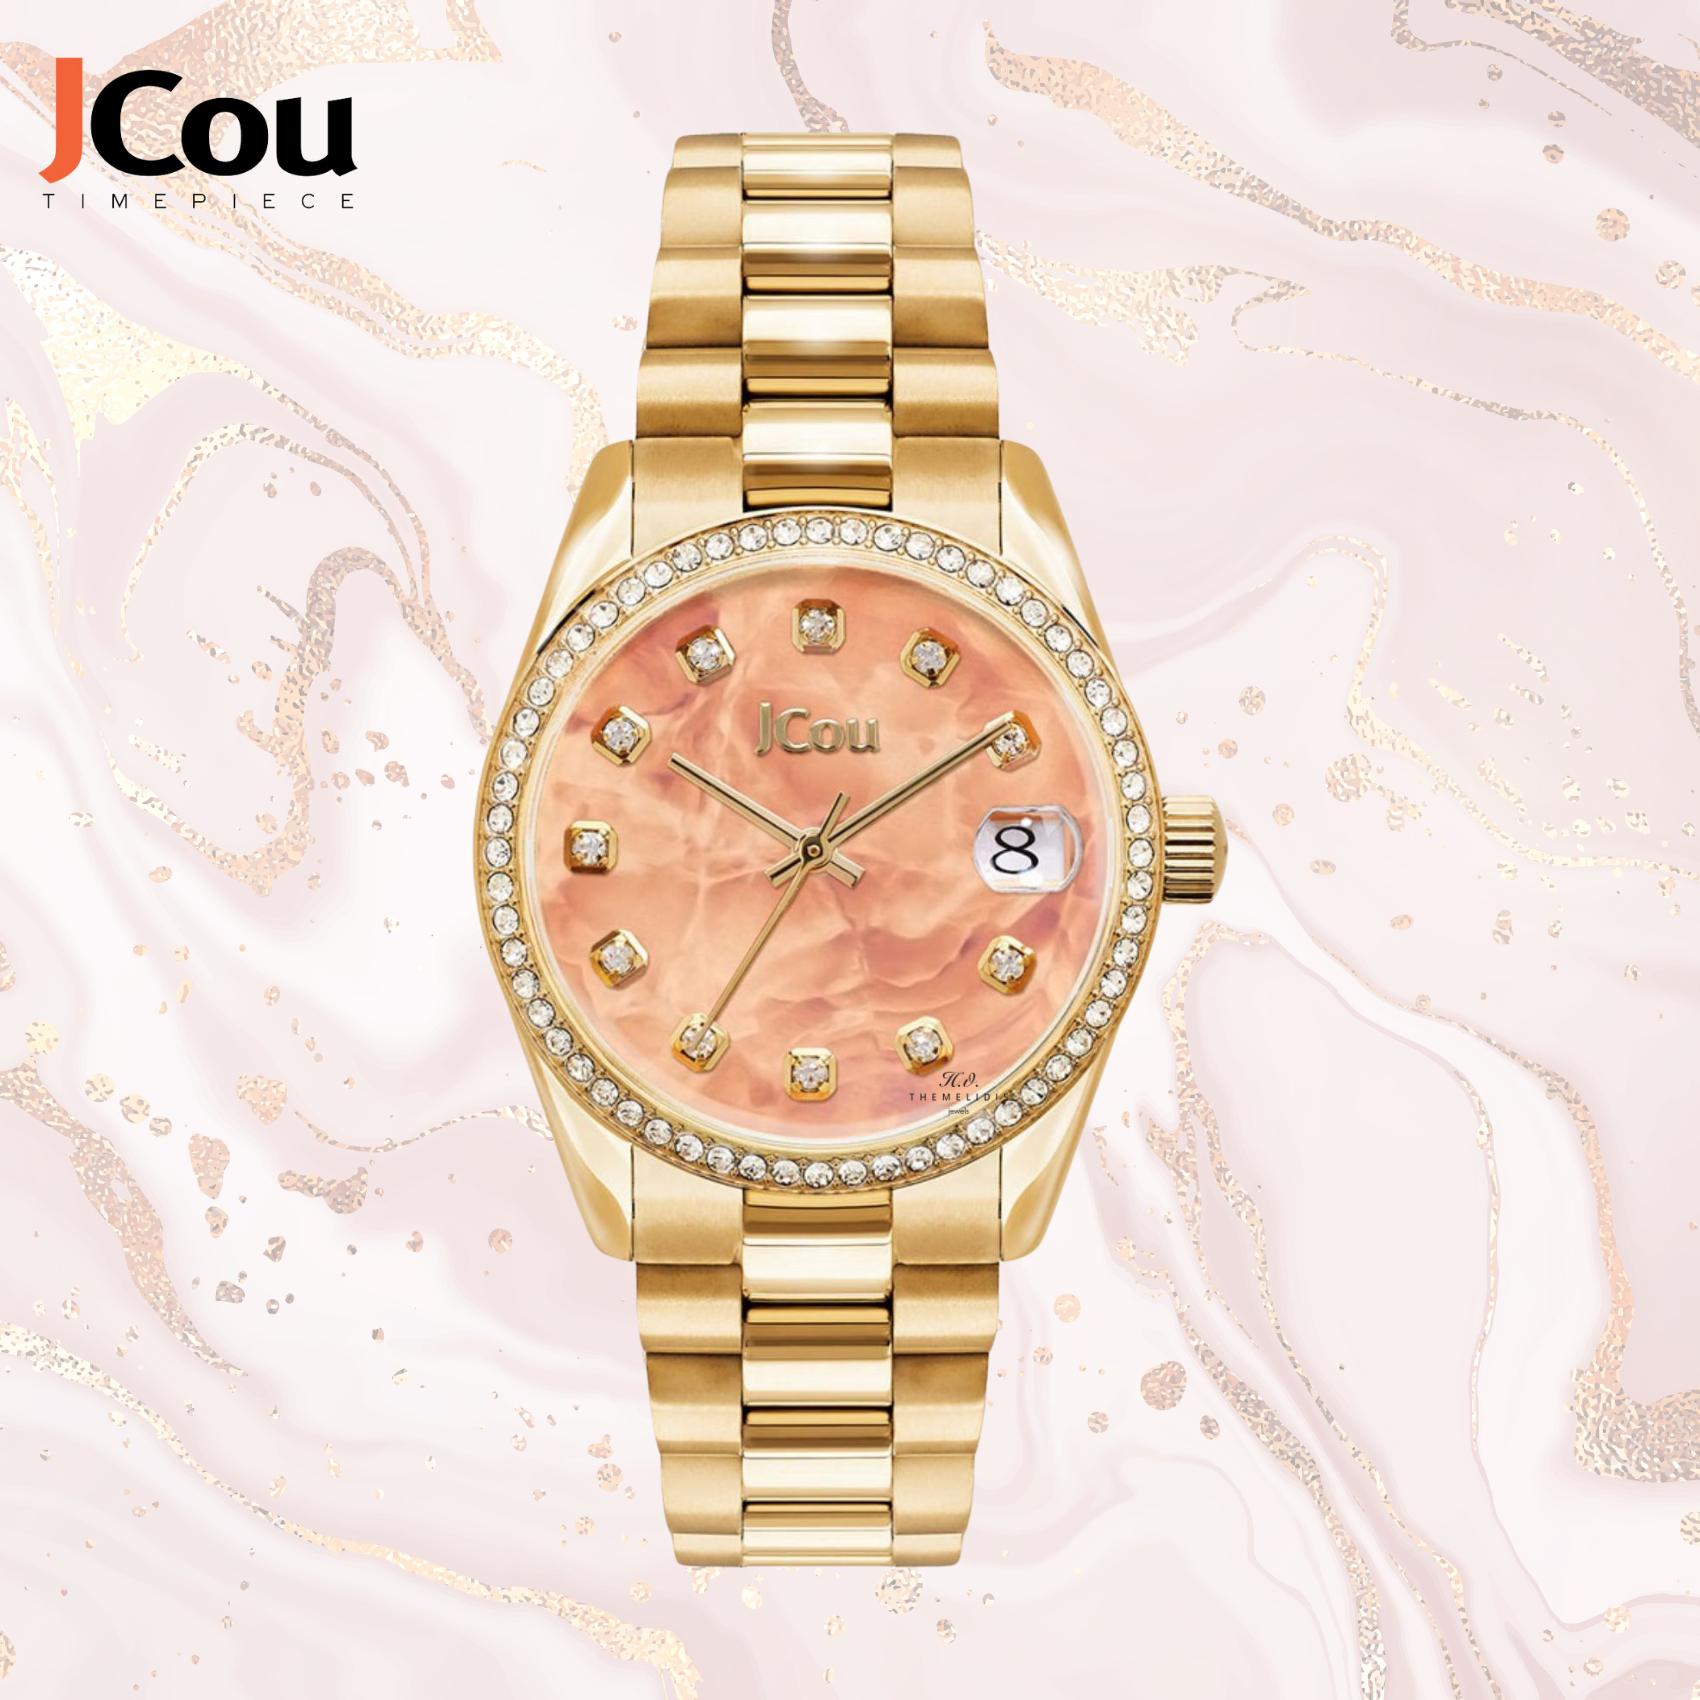 Γυναικείο ρολόι JCOU Gliss JU19060-8 με χρυσό ατσάλινο μπρασελέ και σομόν καντραν διαμέτρου 34mm με ζιργκόν και ένδειξη ημερομηνίας.